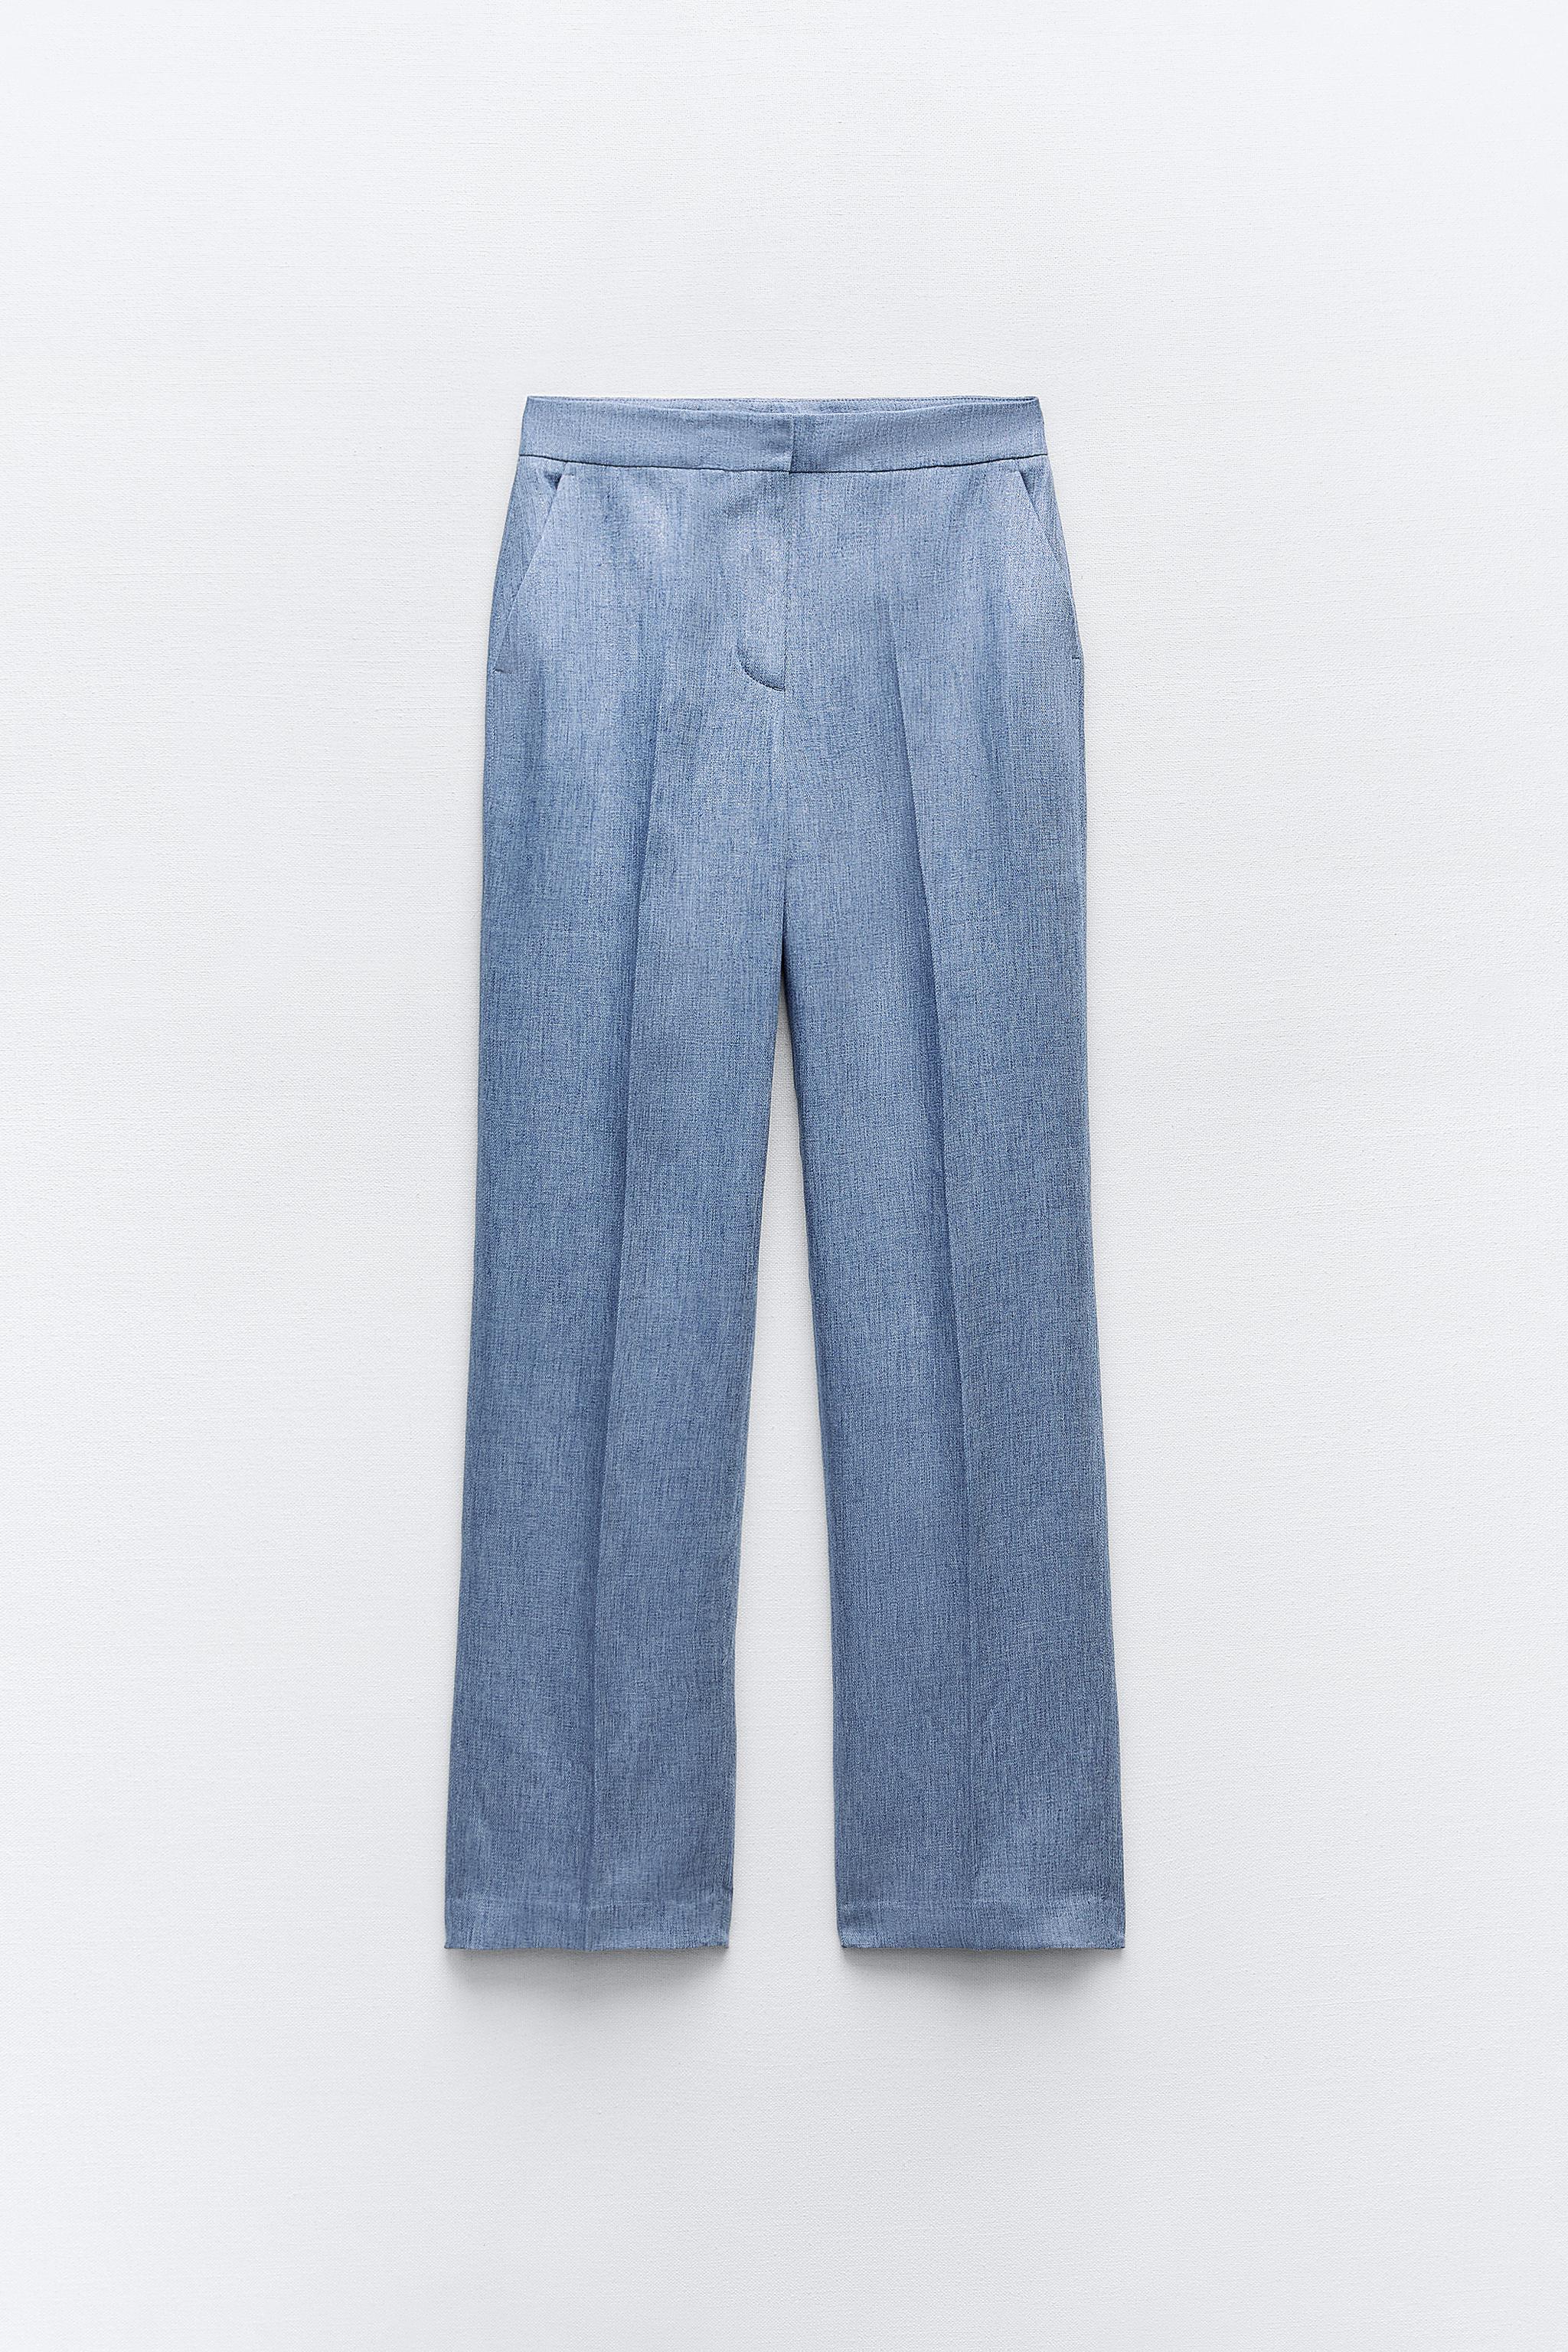 Marni Jacquard-knit cotton-blend leggings (7.137.575 IDR) ❤ liked